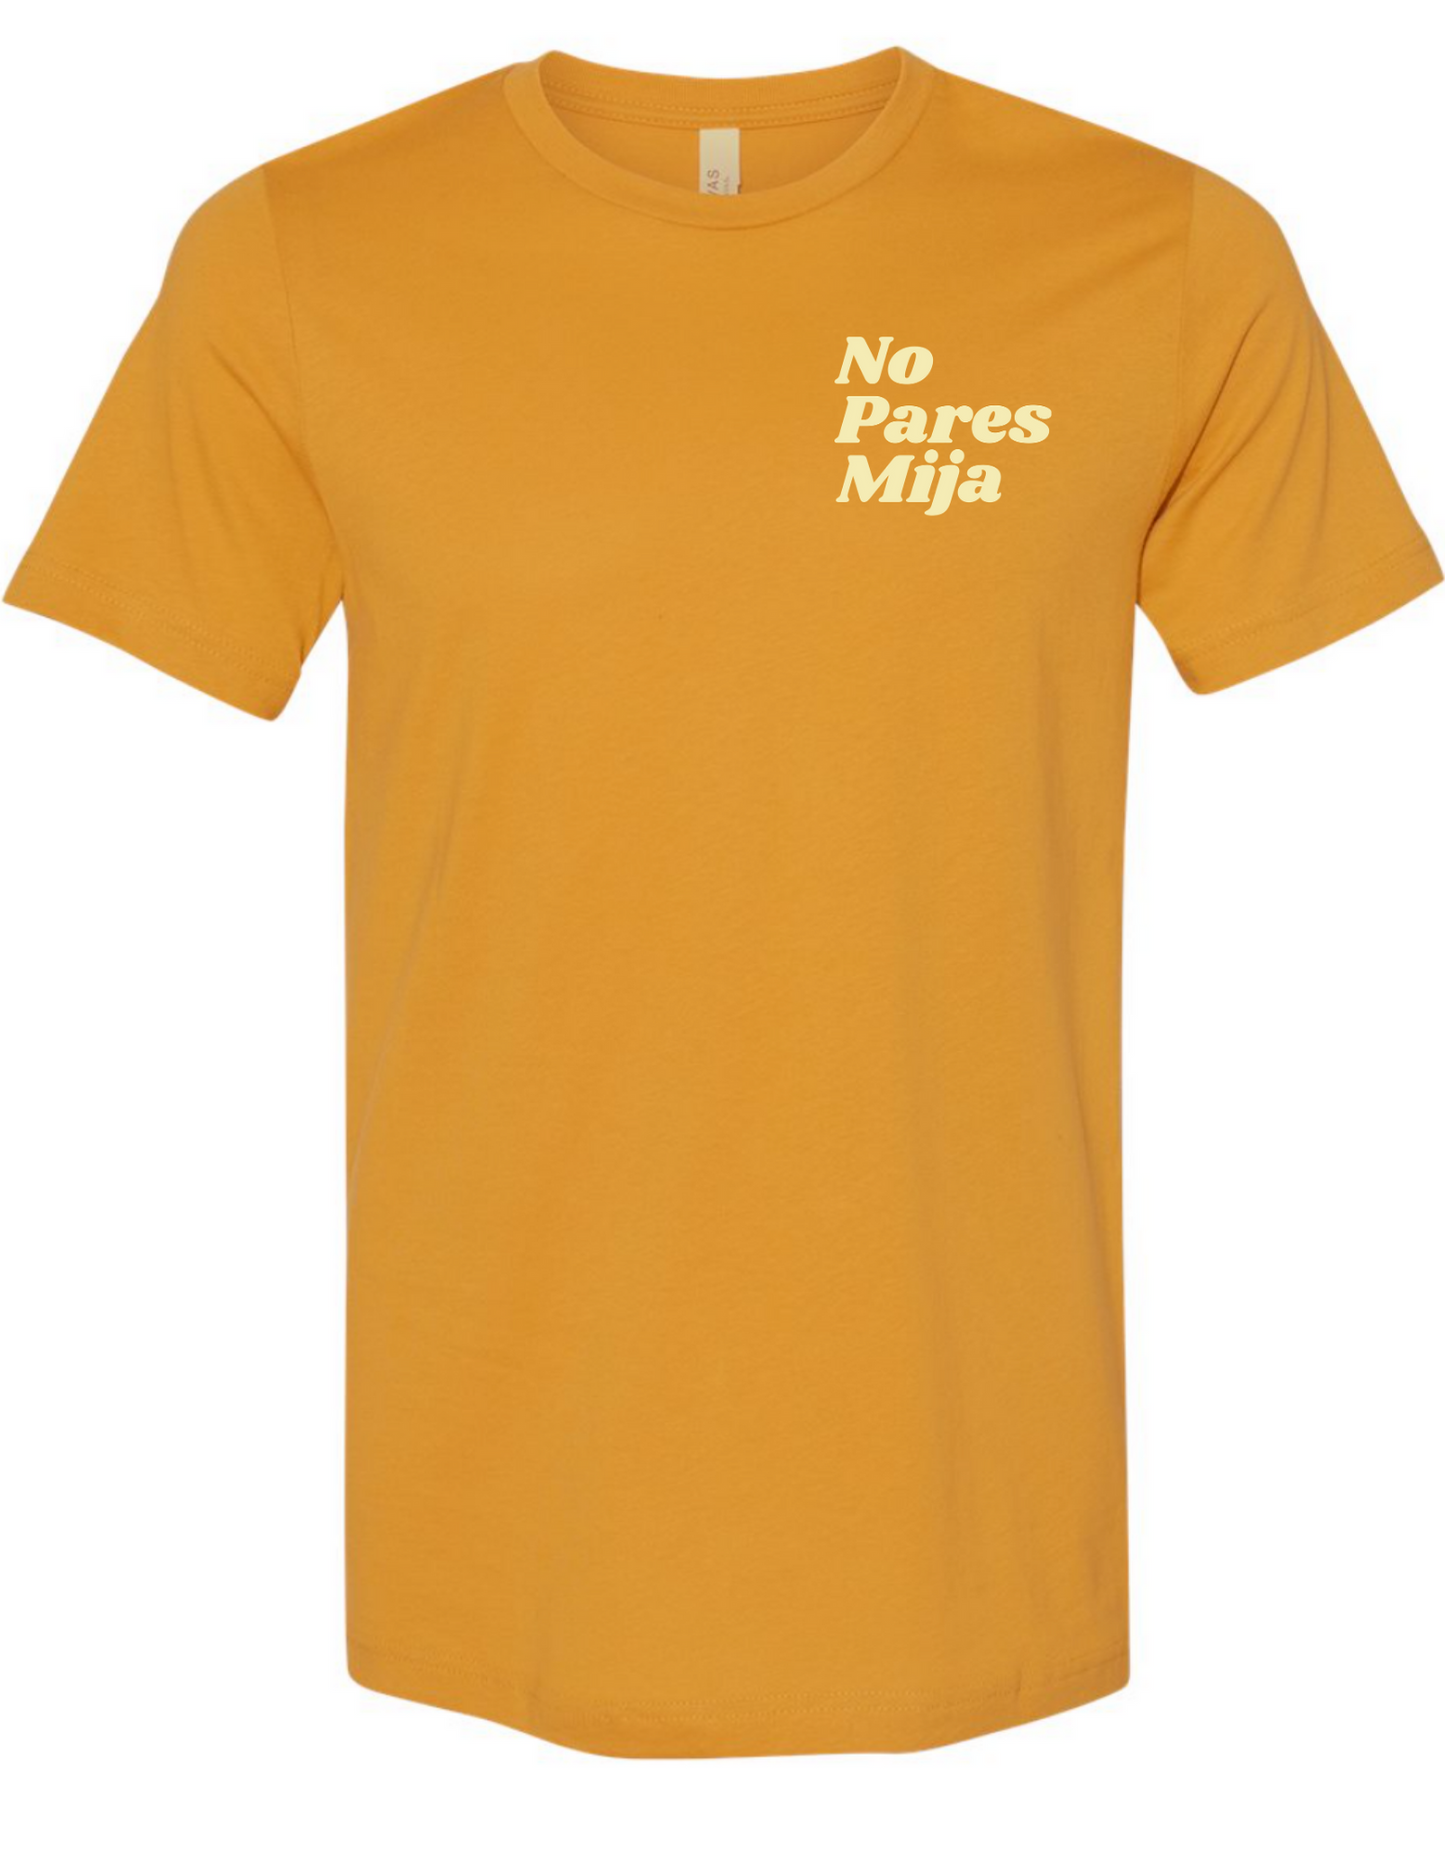 No Pares Mija T-Shirt (Mustard)